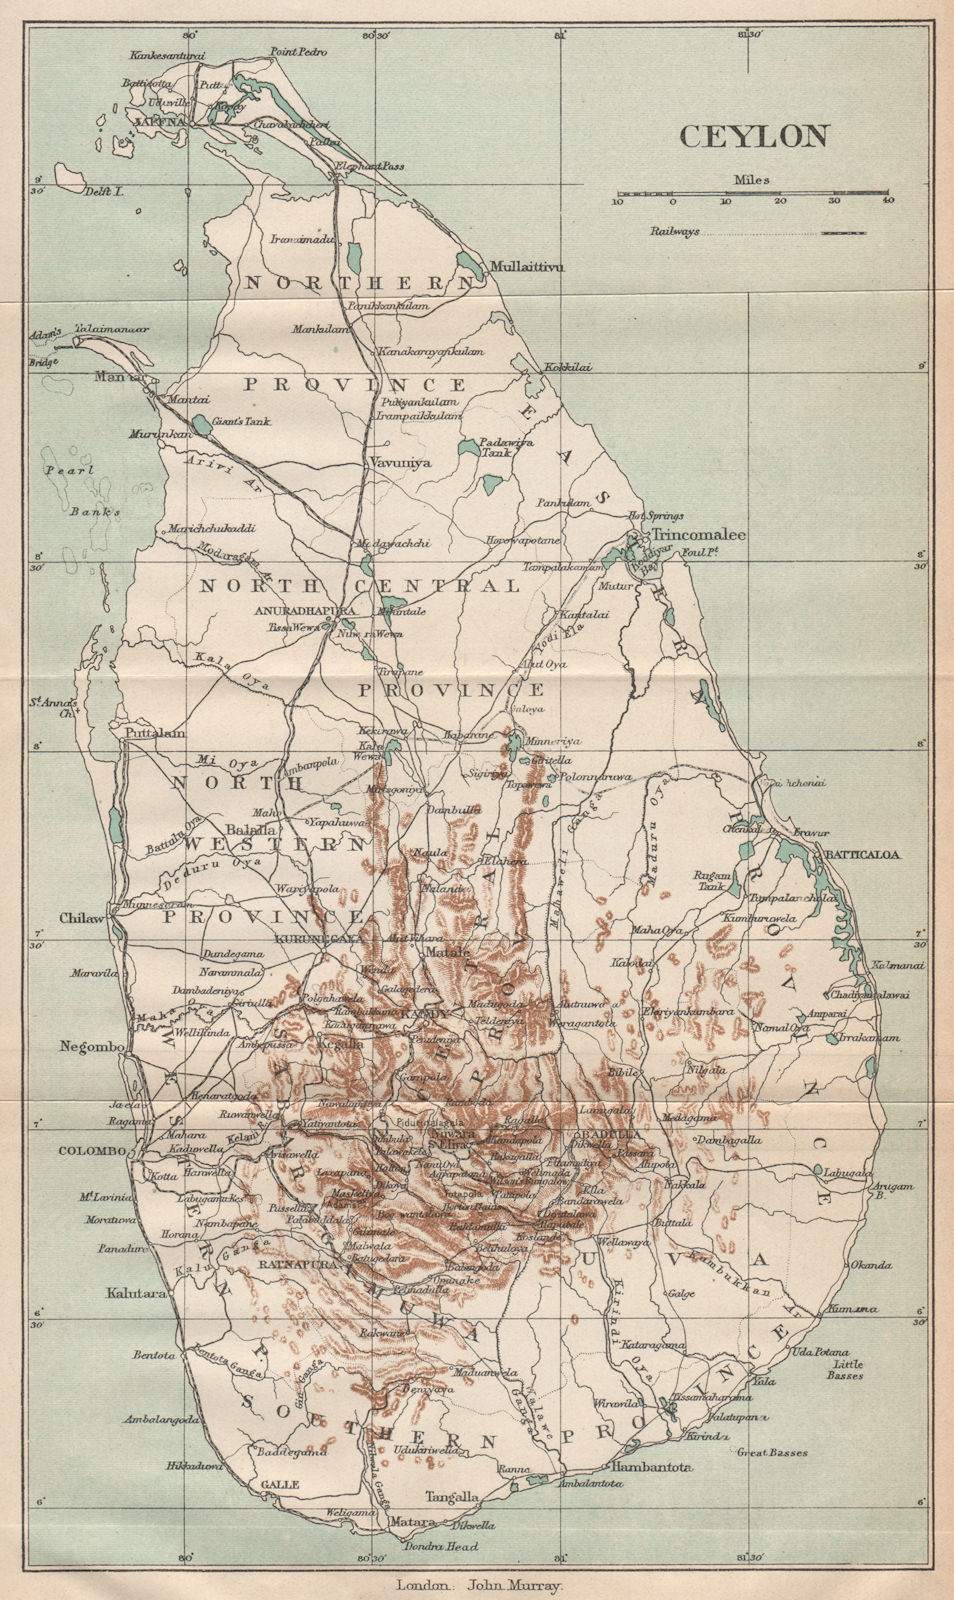 CEYLON. Ceylon (Sri Lanka) map showing railways towns. British India 1929